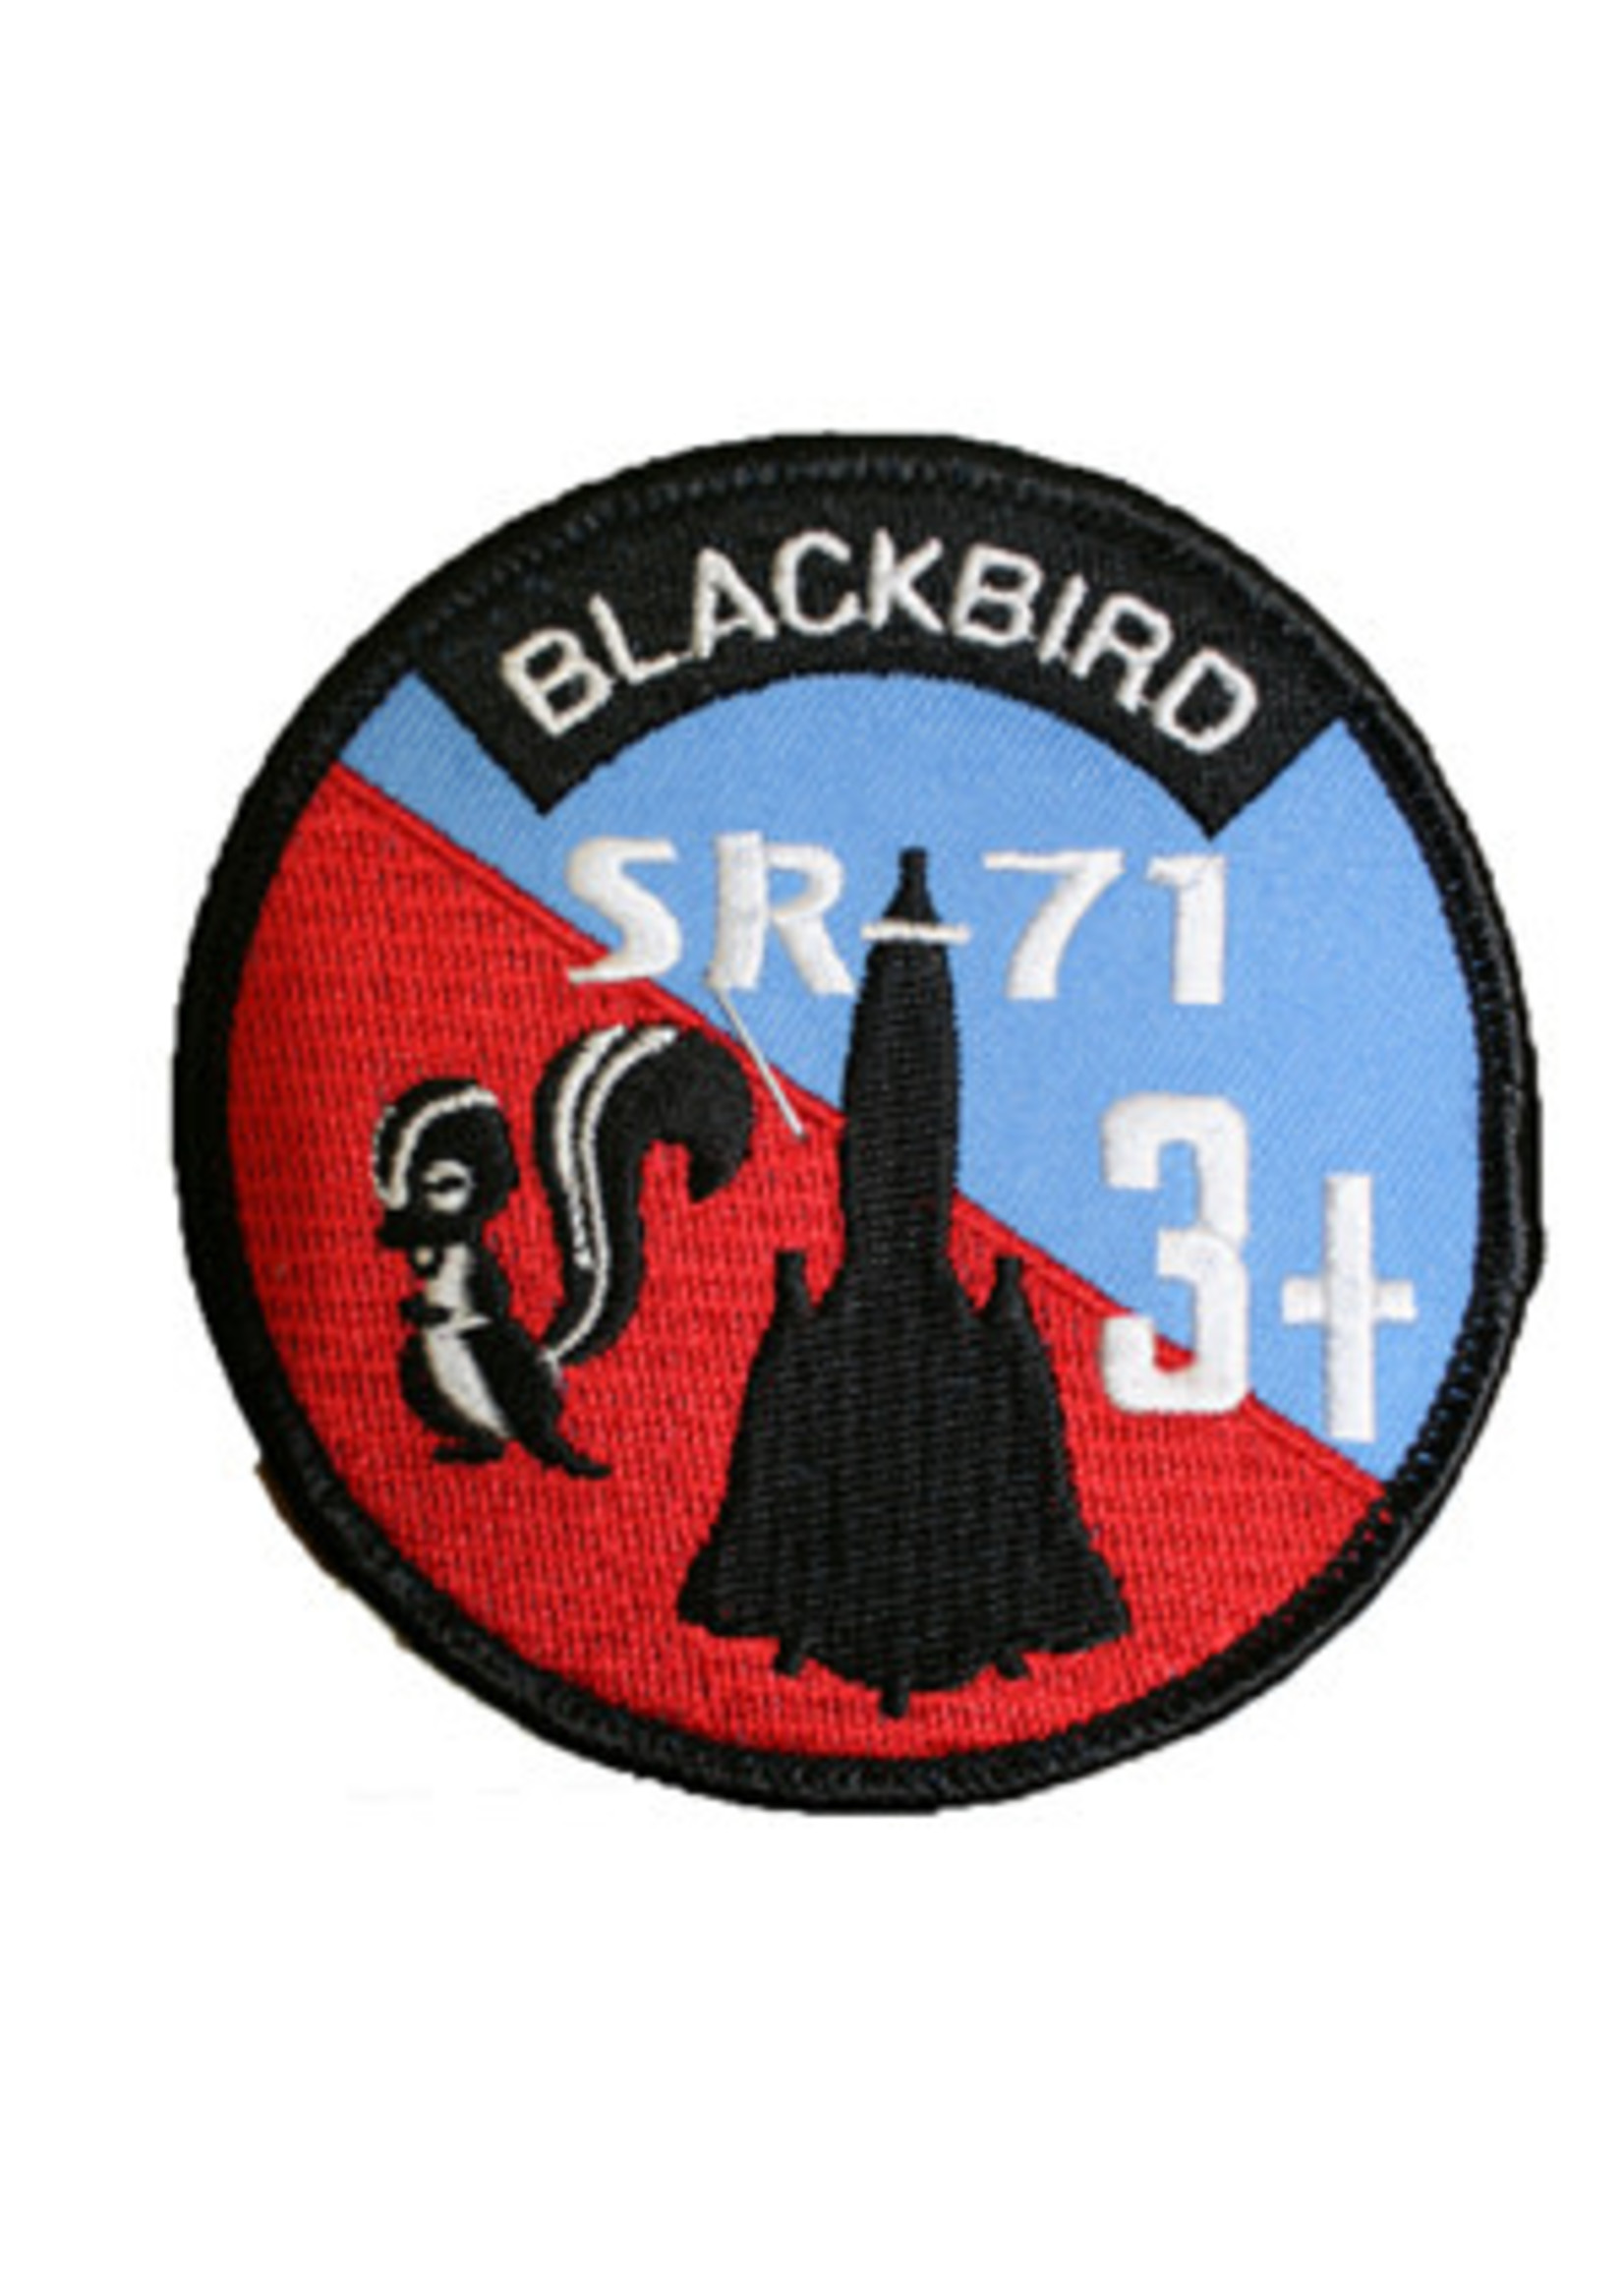 Robert Seifert Patches Patch - SR-71 Blackbird Round